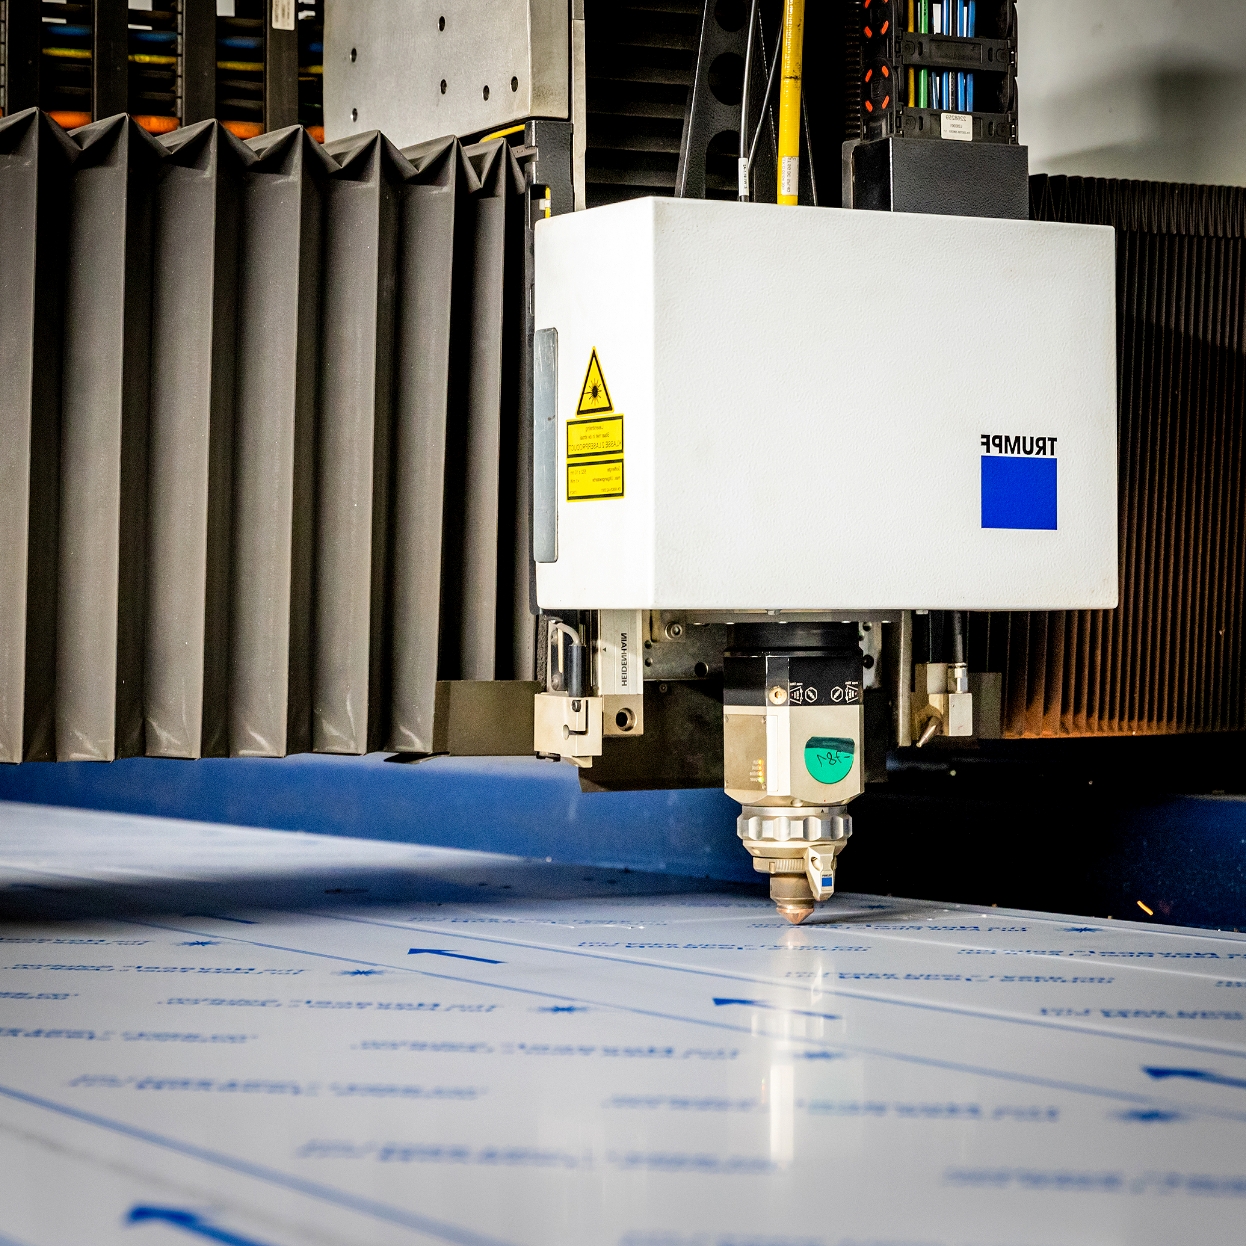 Lasersnijmachine met geautomatiseerd proces met hoge snelheid, efficiëntie en perfectie voor elk project.